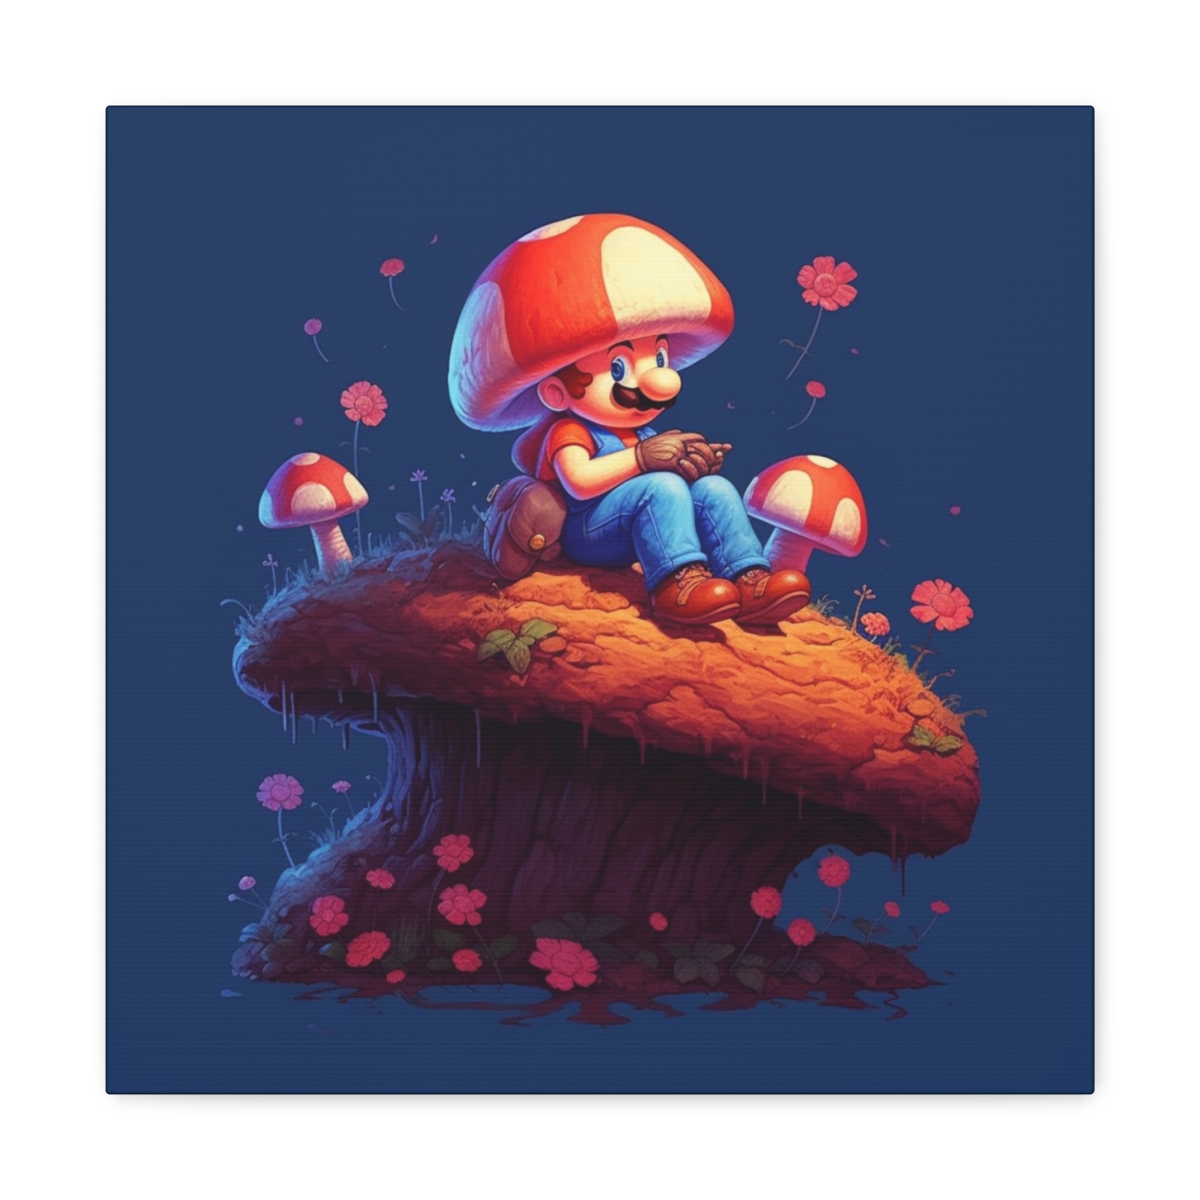 Mushroom Art Canvas Print: Shroom Wonderland